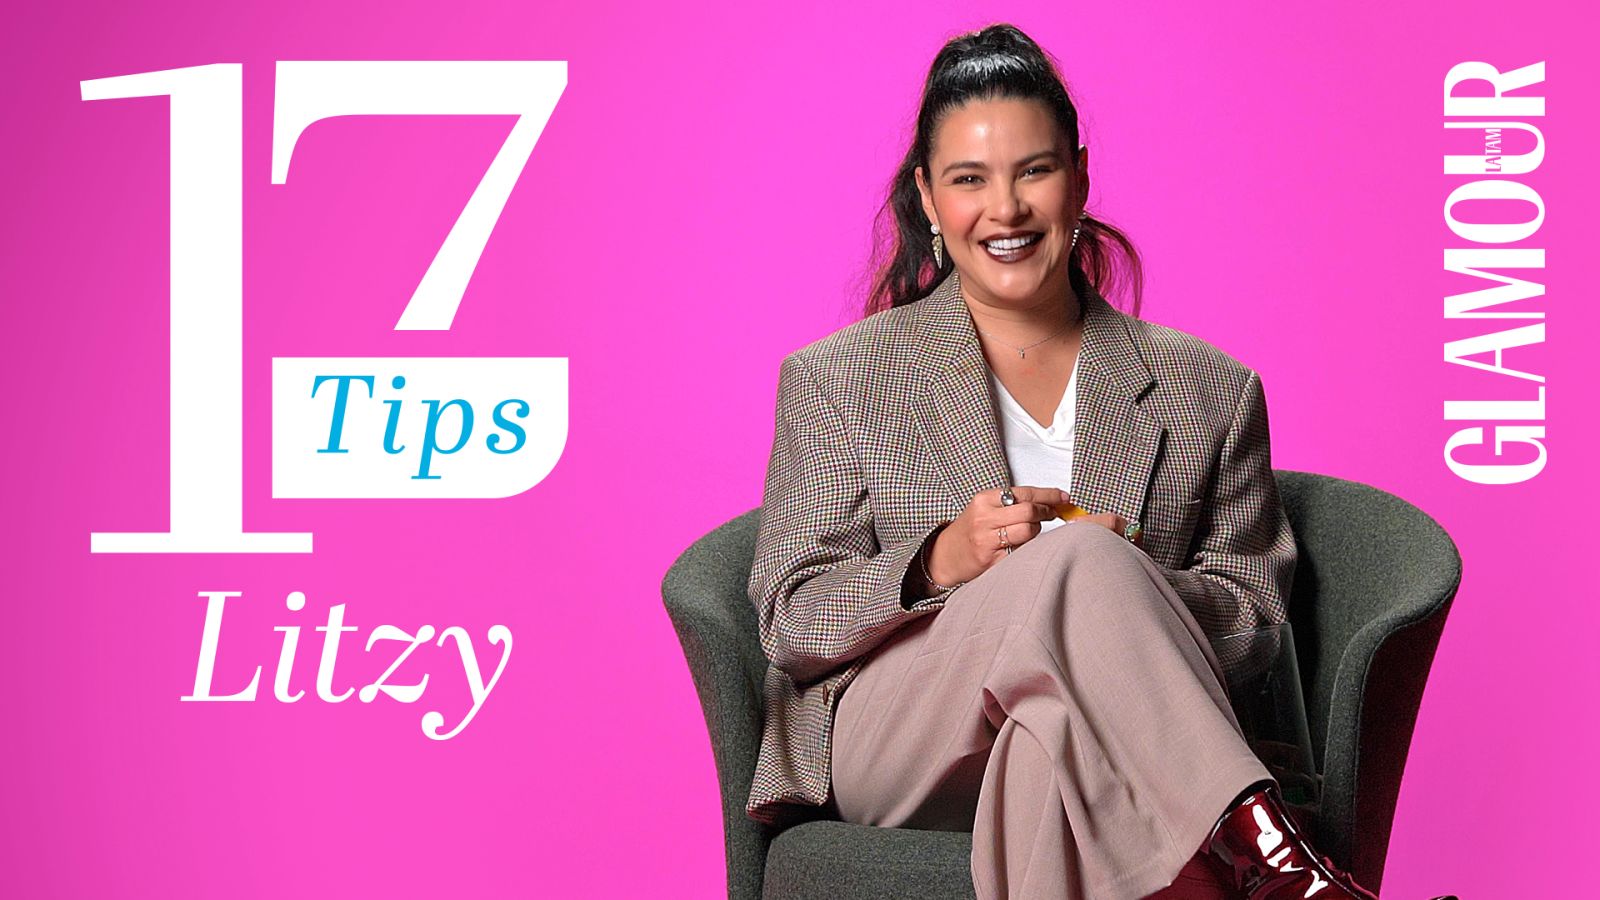 Litzy tiene los 17 tips que harán tu vida más sencilla